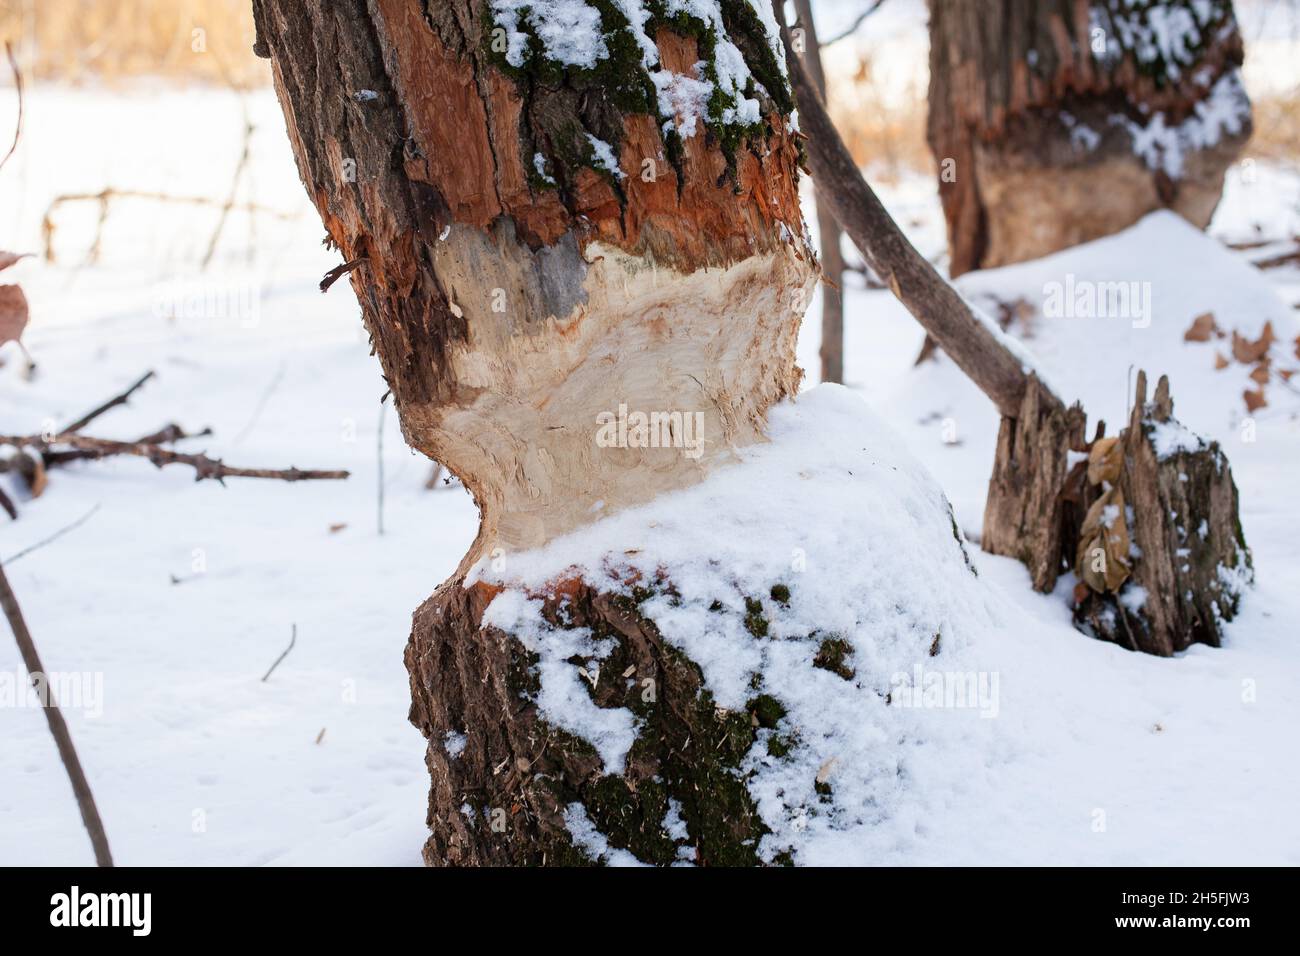 Arbres en forêt d'hiver.Gros plan de troncs d'arbres avec des marques de dents de castor en pleine forêt en Europe, recouverts de neige après une tempête de neige intense Banque D'Images